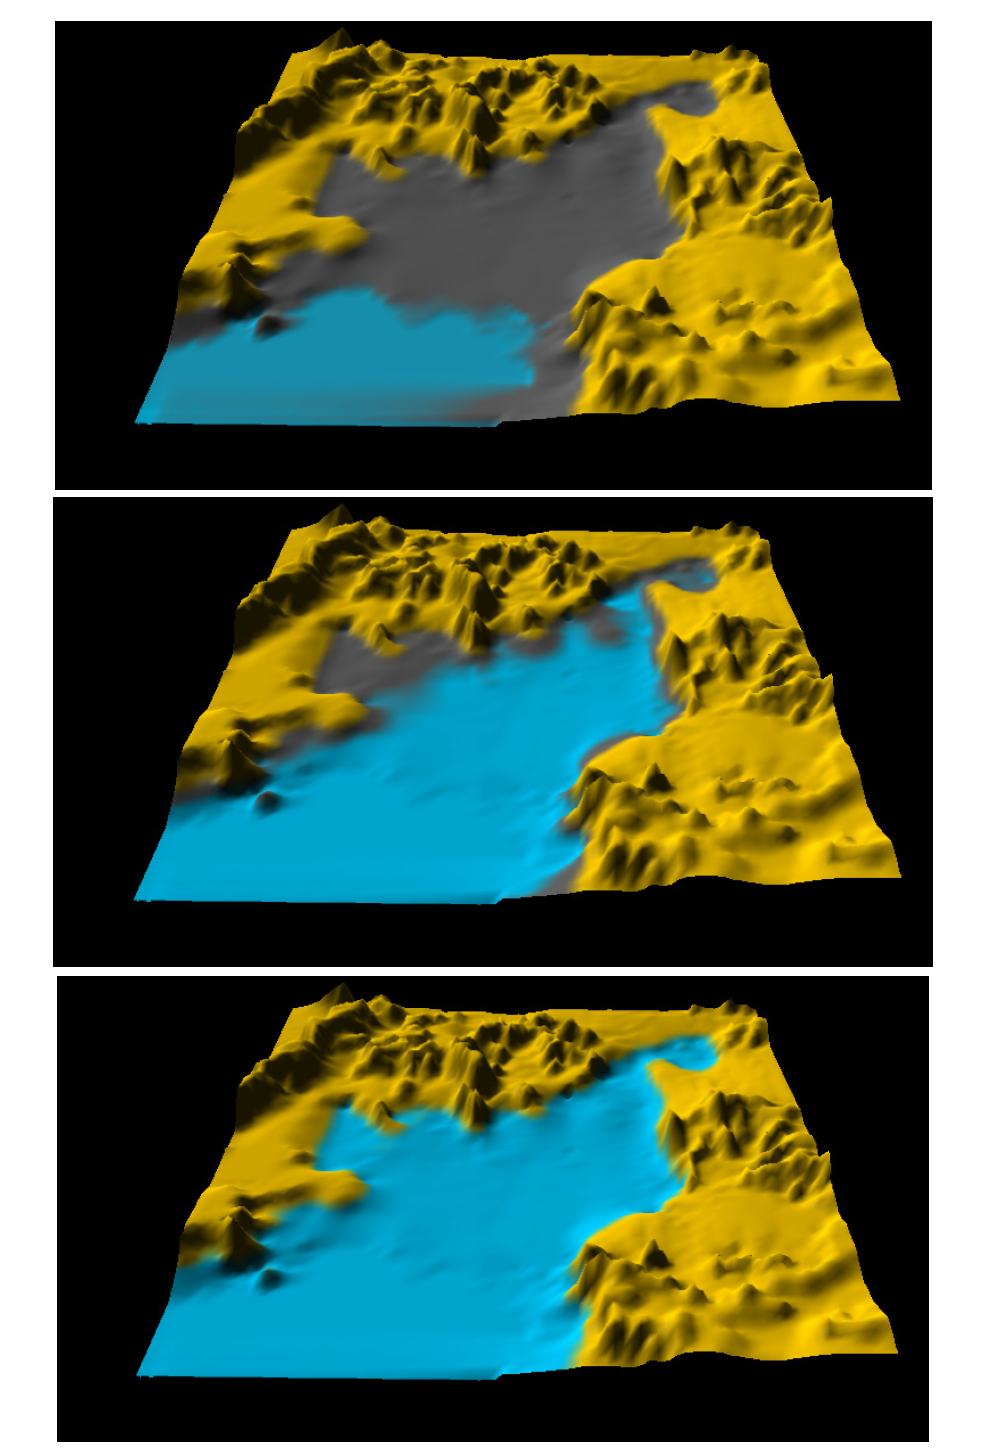 남면 갯벌 조위도(상: -3m, 중: 0m, 하: -3m). 수심은 평균해수면 기준